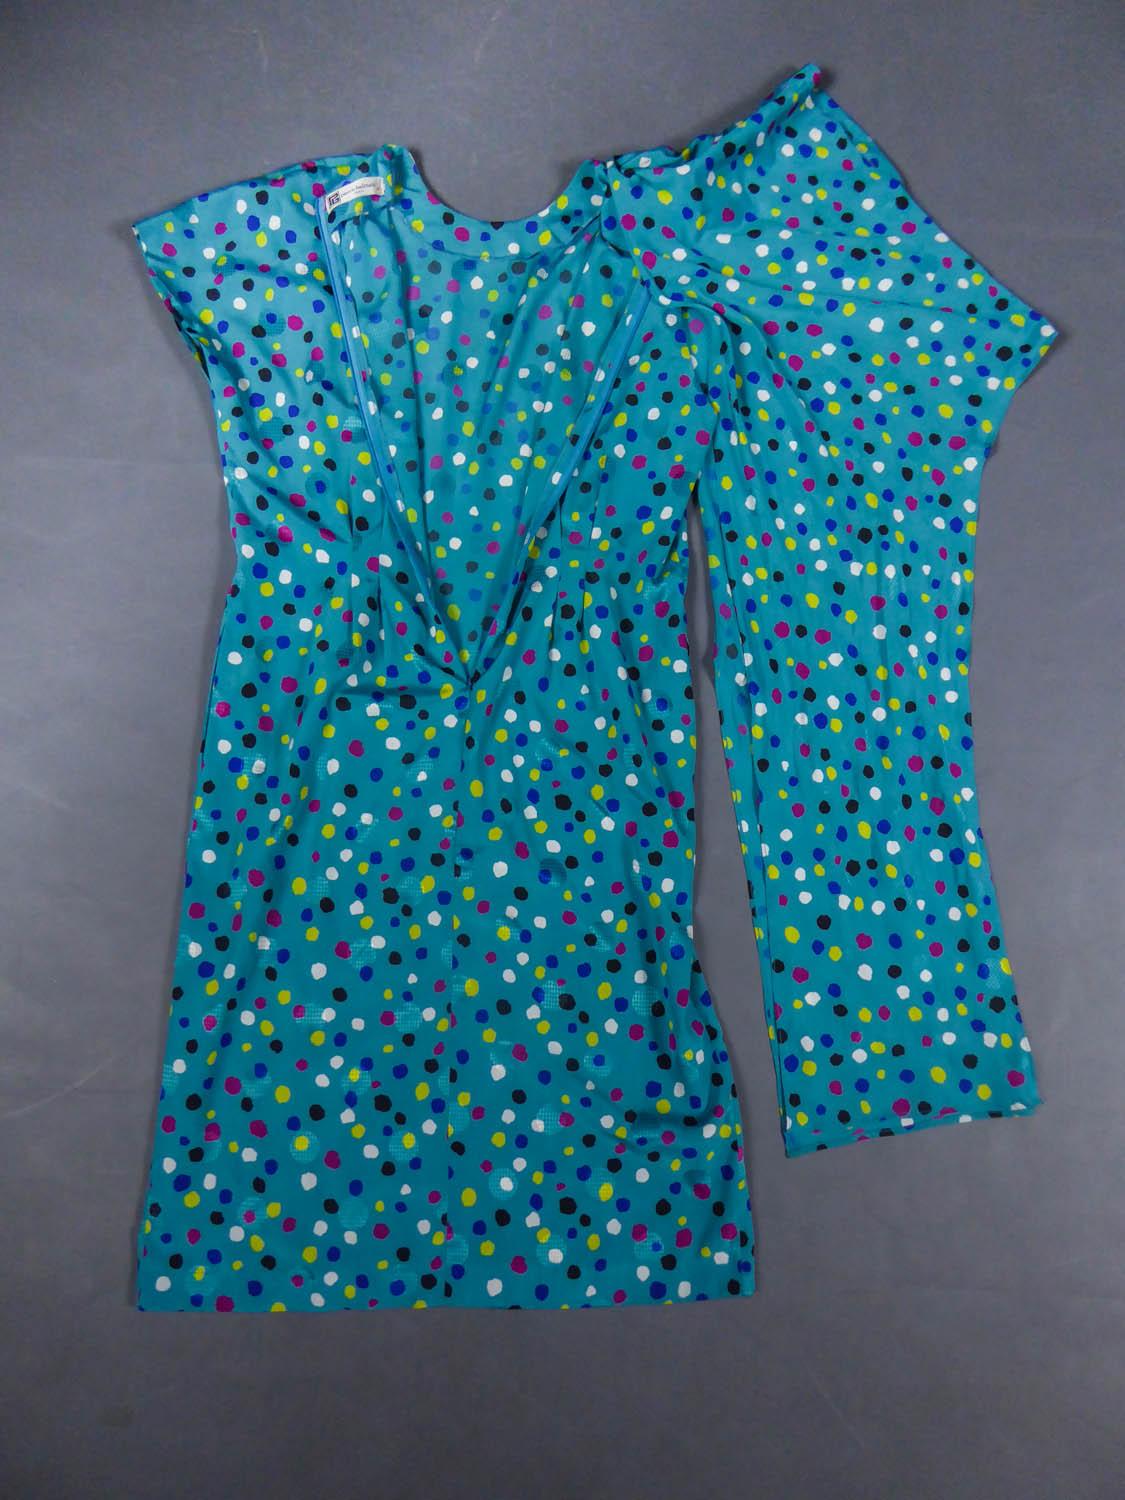 Um 1980
Frankreich

Pierre Balmain Sommerkleid aus blauer Seide mit Tupfen in den Farben Gelb, Rosa, Weiß und Schwarz. Rundhalsausschnitt, kurze Kimono-Ärmel, in der Taille gestrafftes Kleid, das durch eine an der Hüfte gebundene Drapierung betont